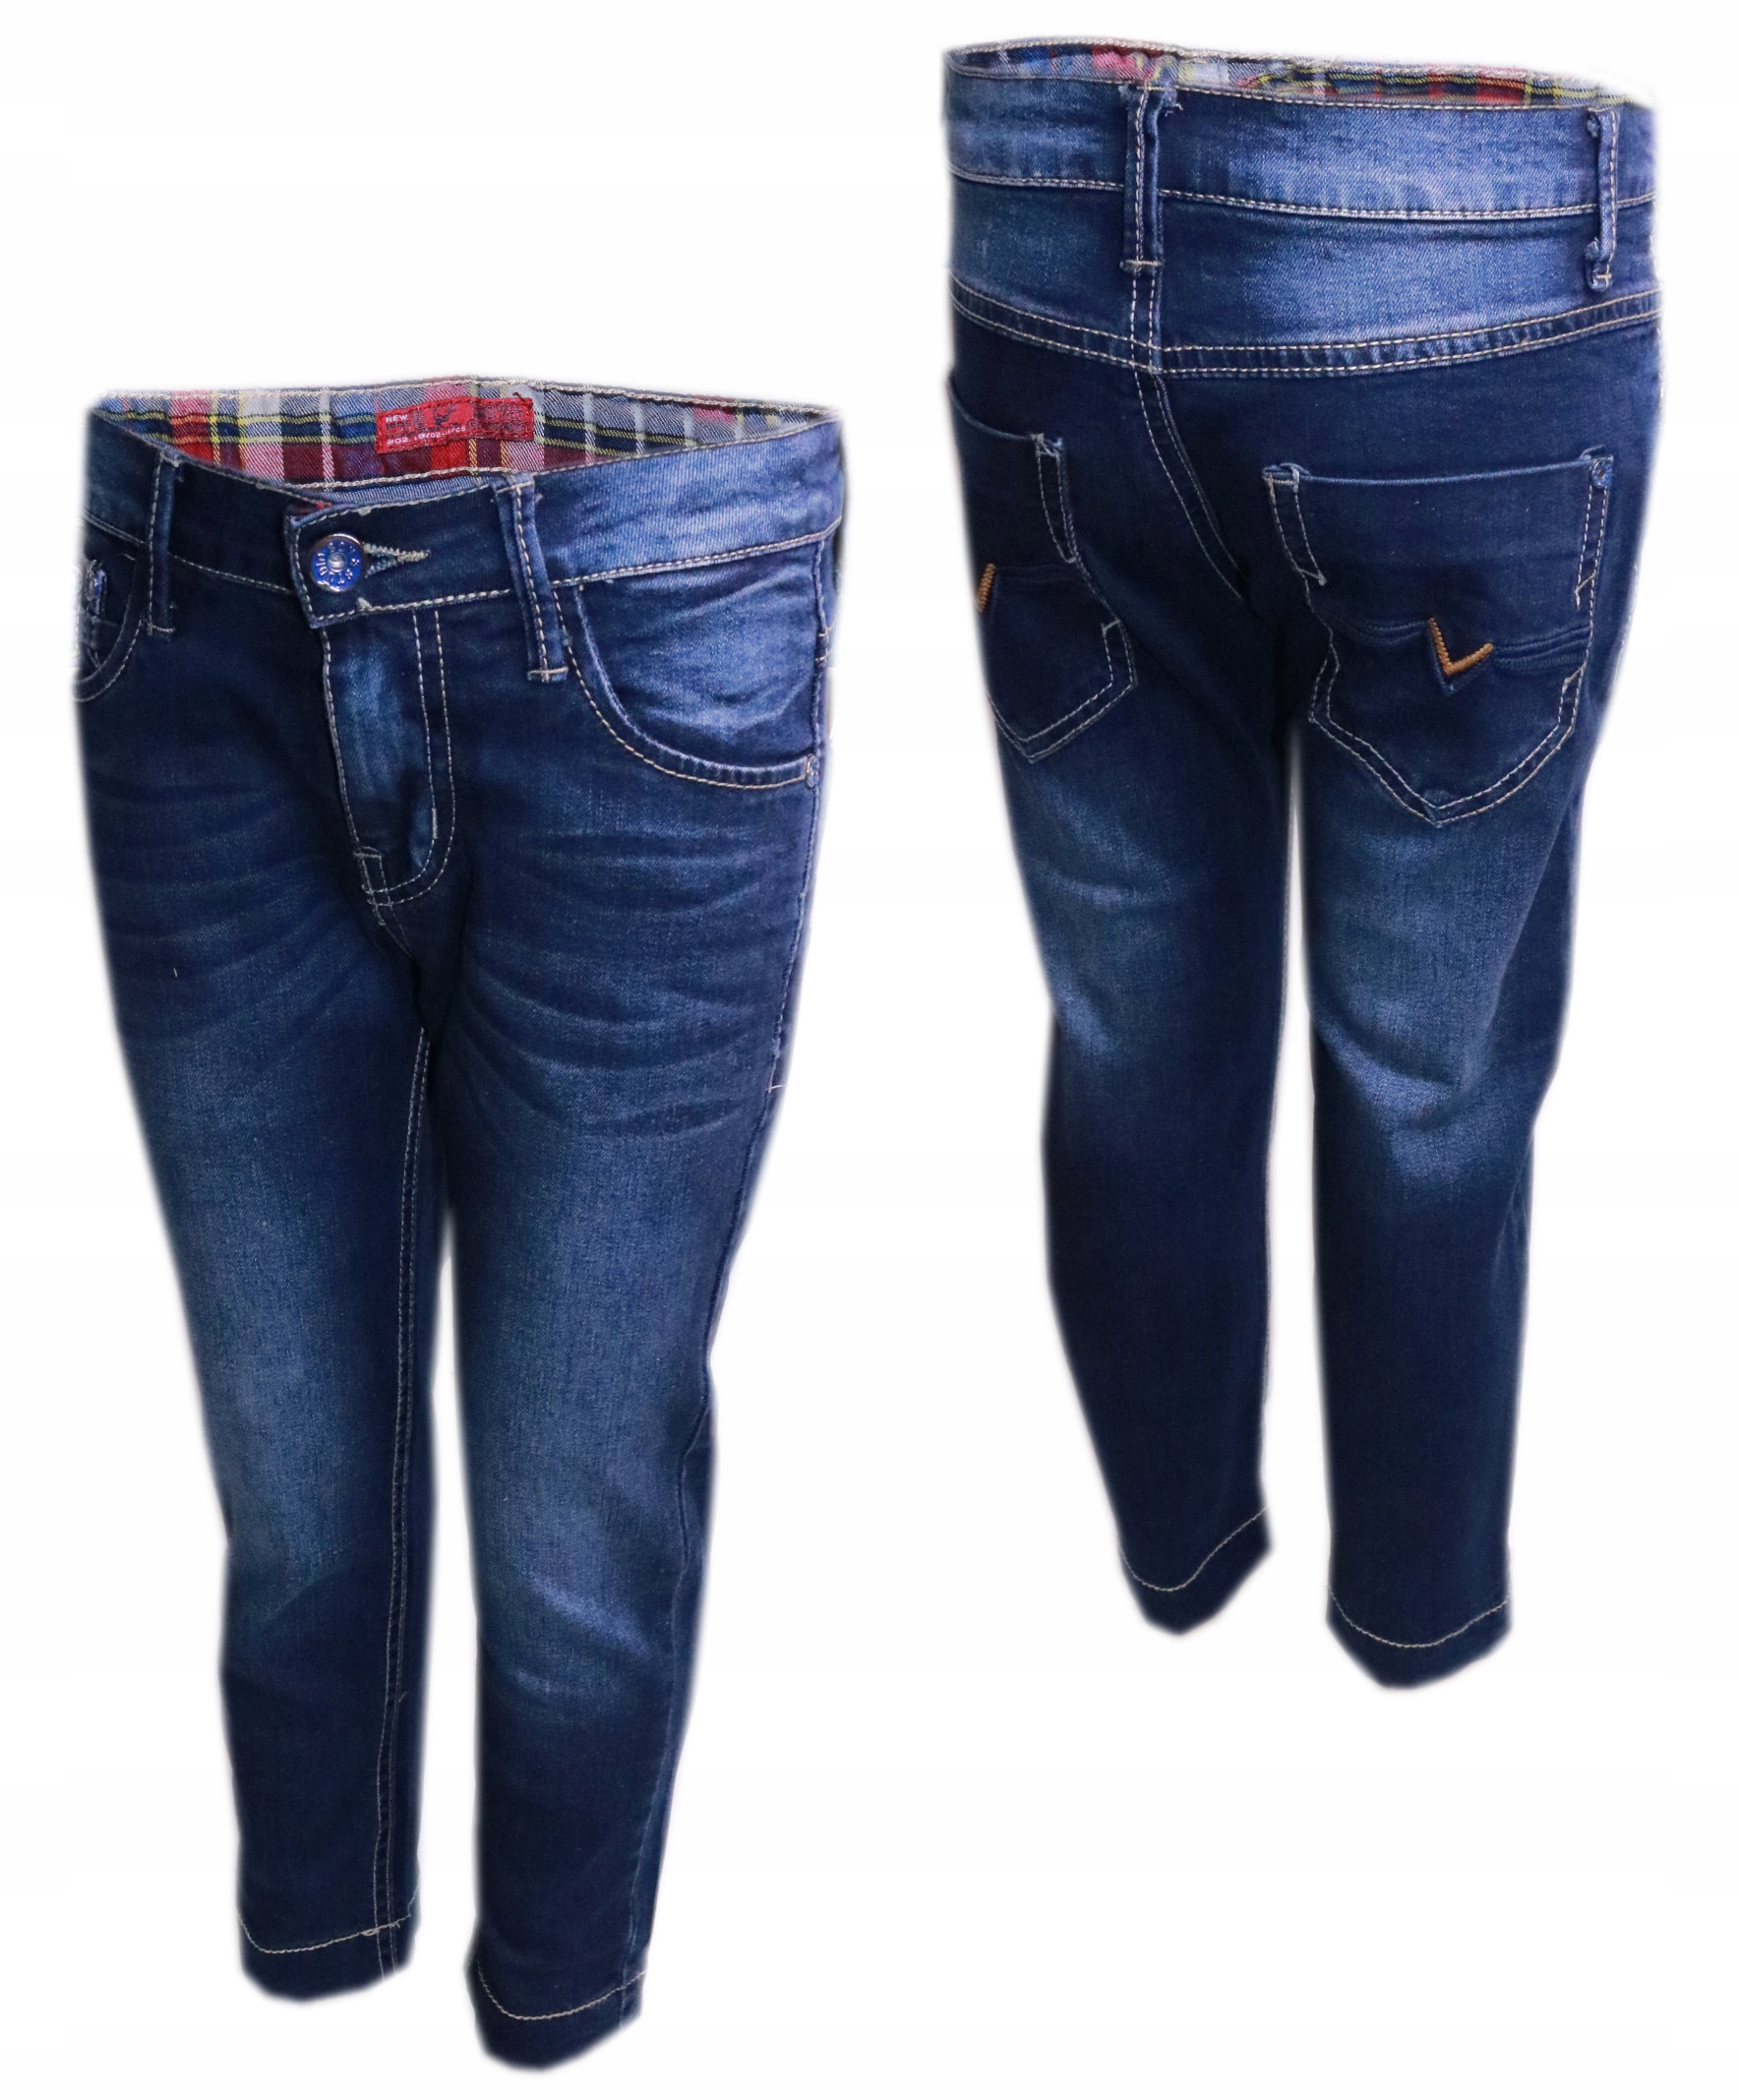 Spodnie jeansowe chłopięce jeansy 74-80